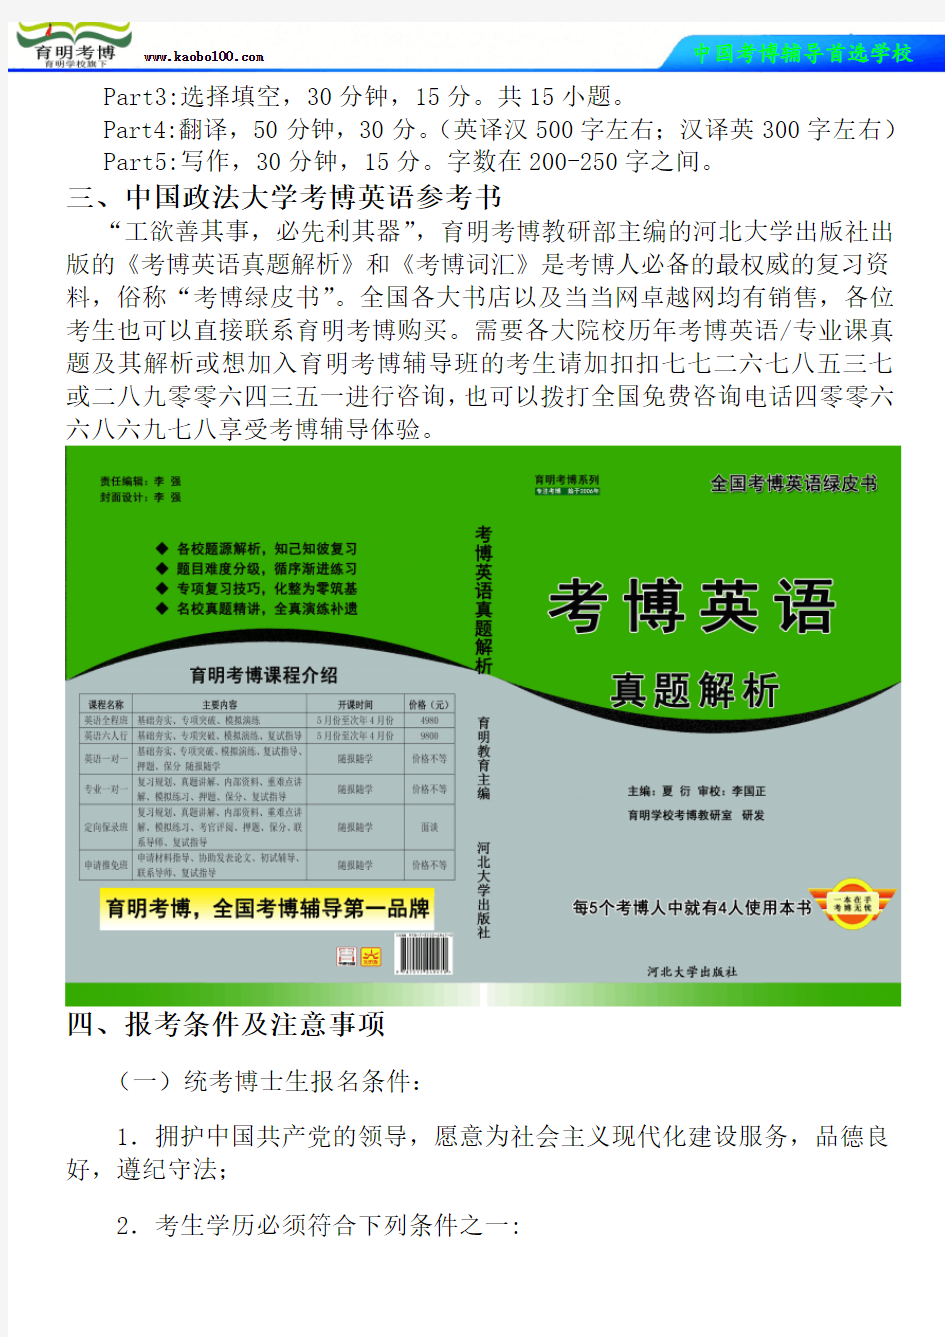 中国政法大学中欧法学院民商法学考博真题-参考书-分数线-分析资料-复习方法-育明考博